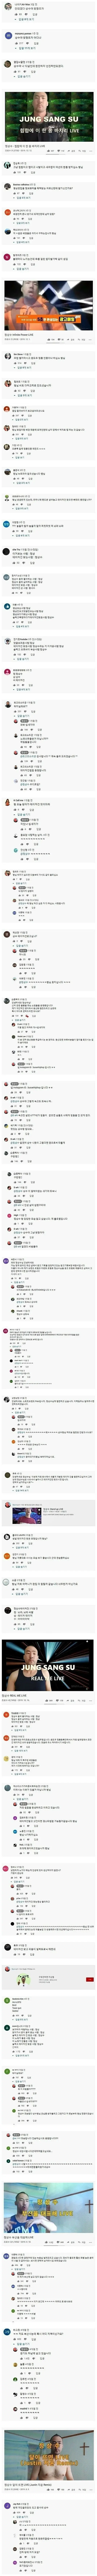 정상수 유튜브 댓글 레전드 ㄷ..JPG | mbong.kr 엠봉